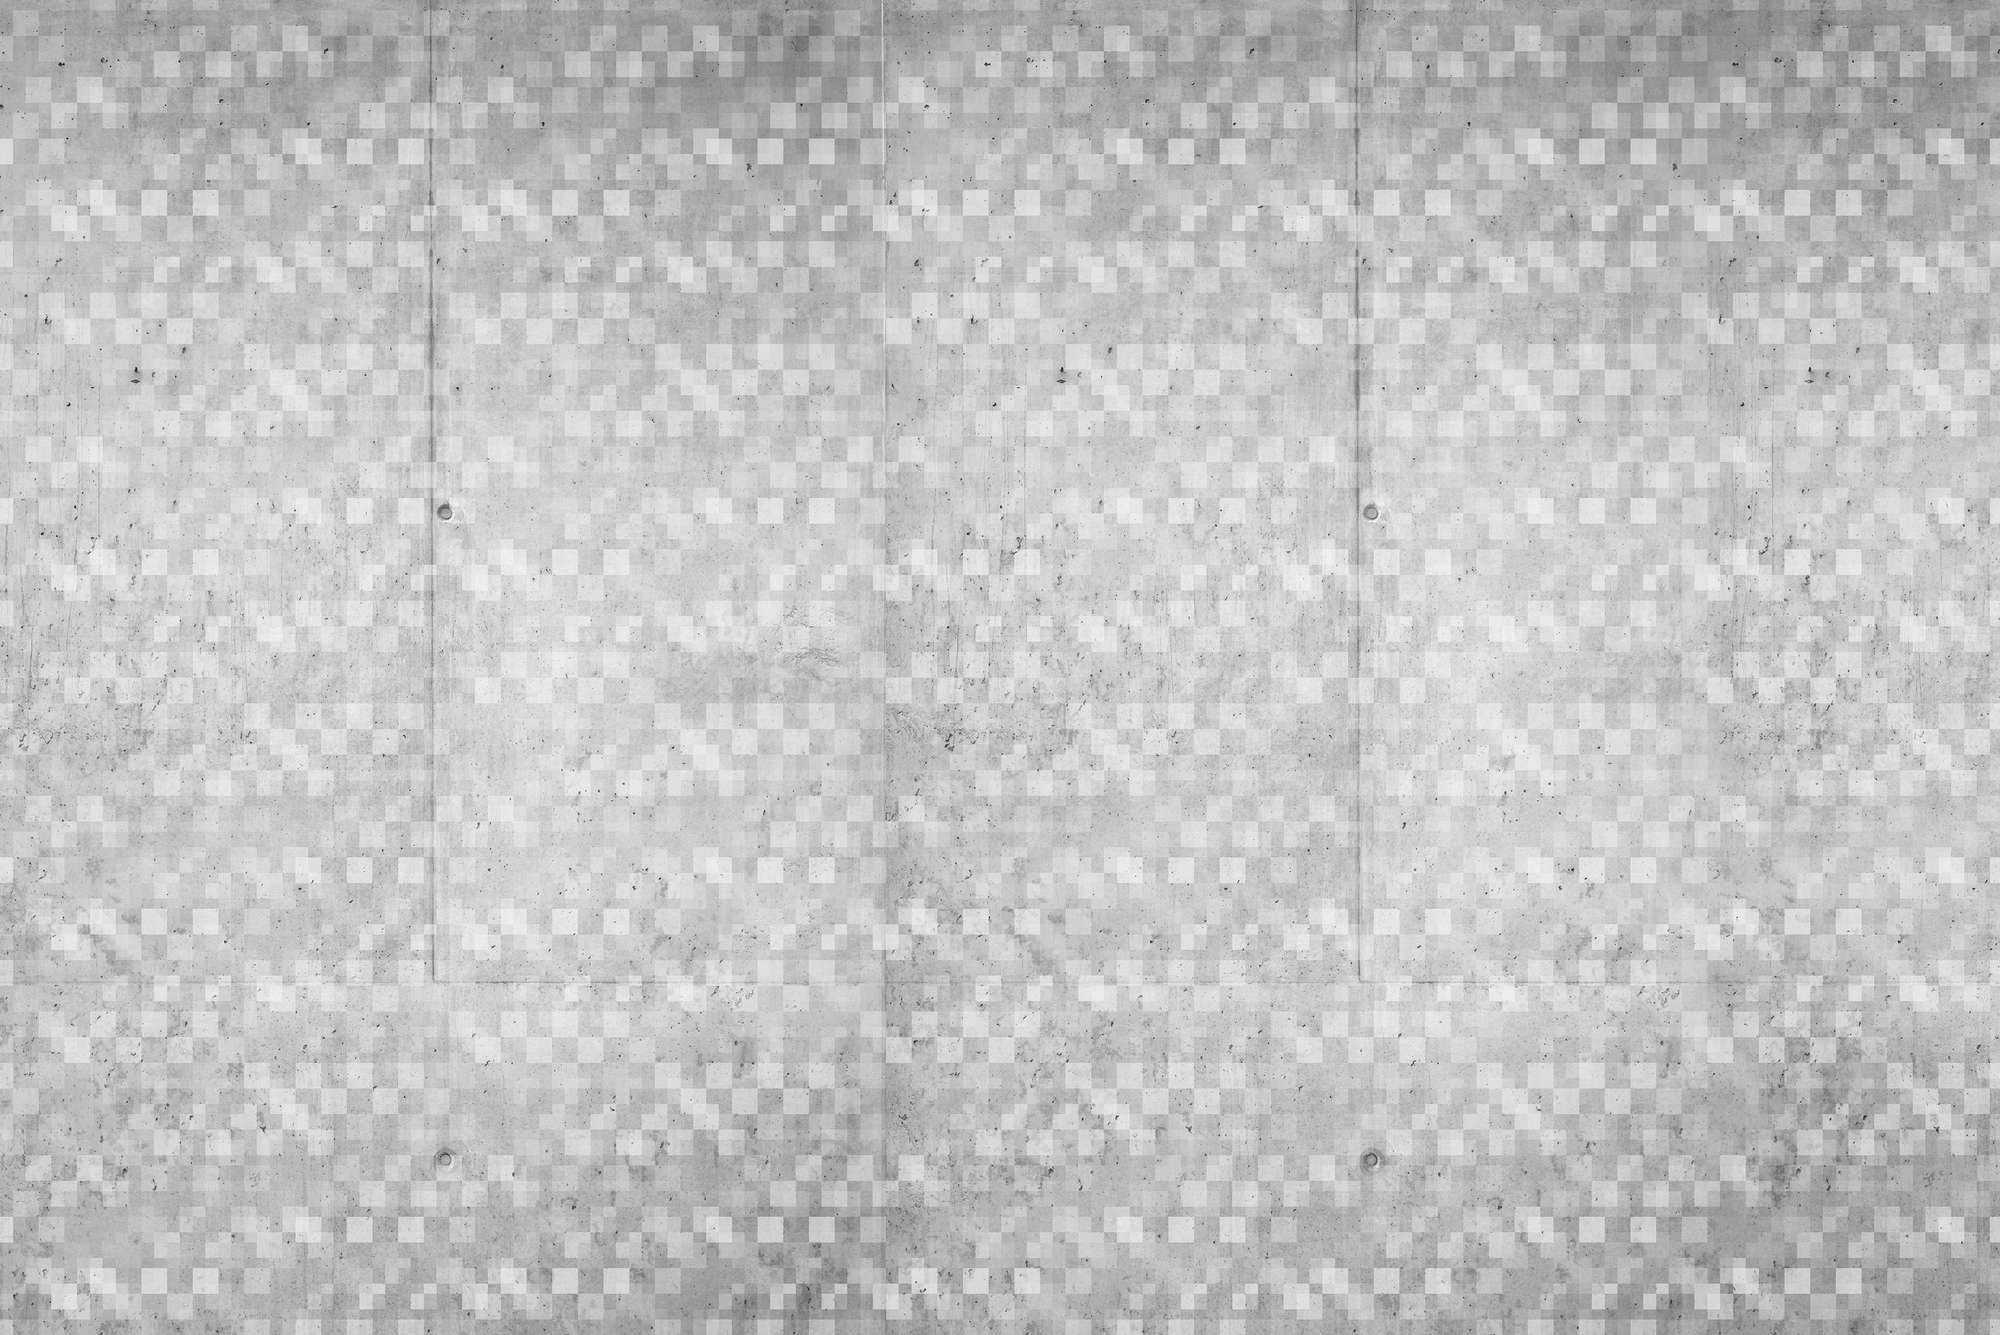             Carta da parati grafica con motivo a cubi sovrapposti grigio su vello liscio opaco
        